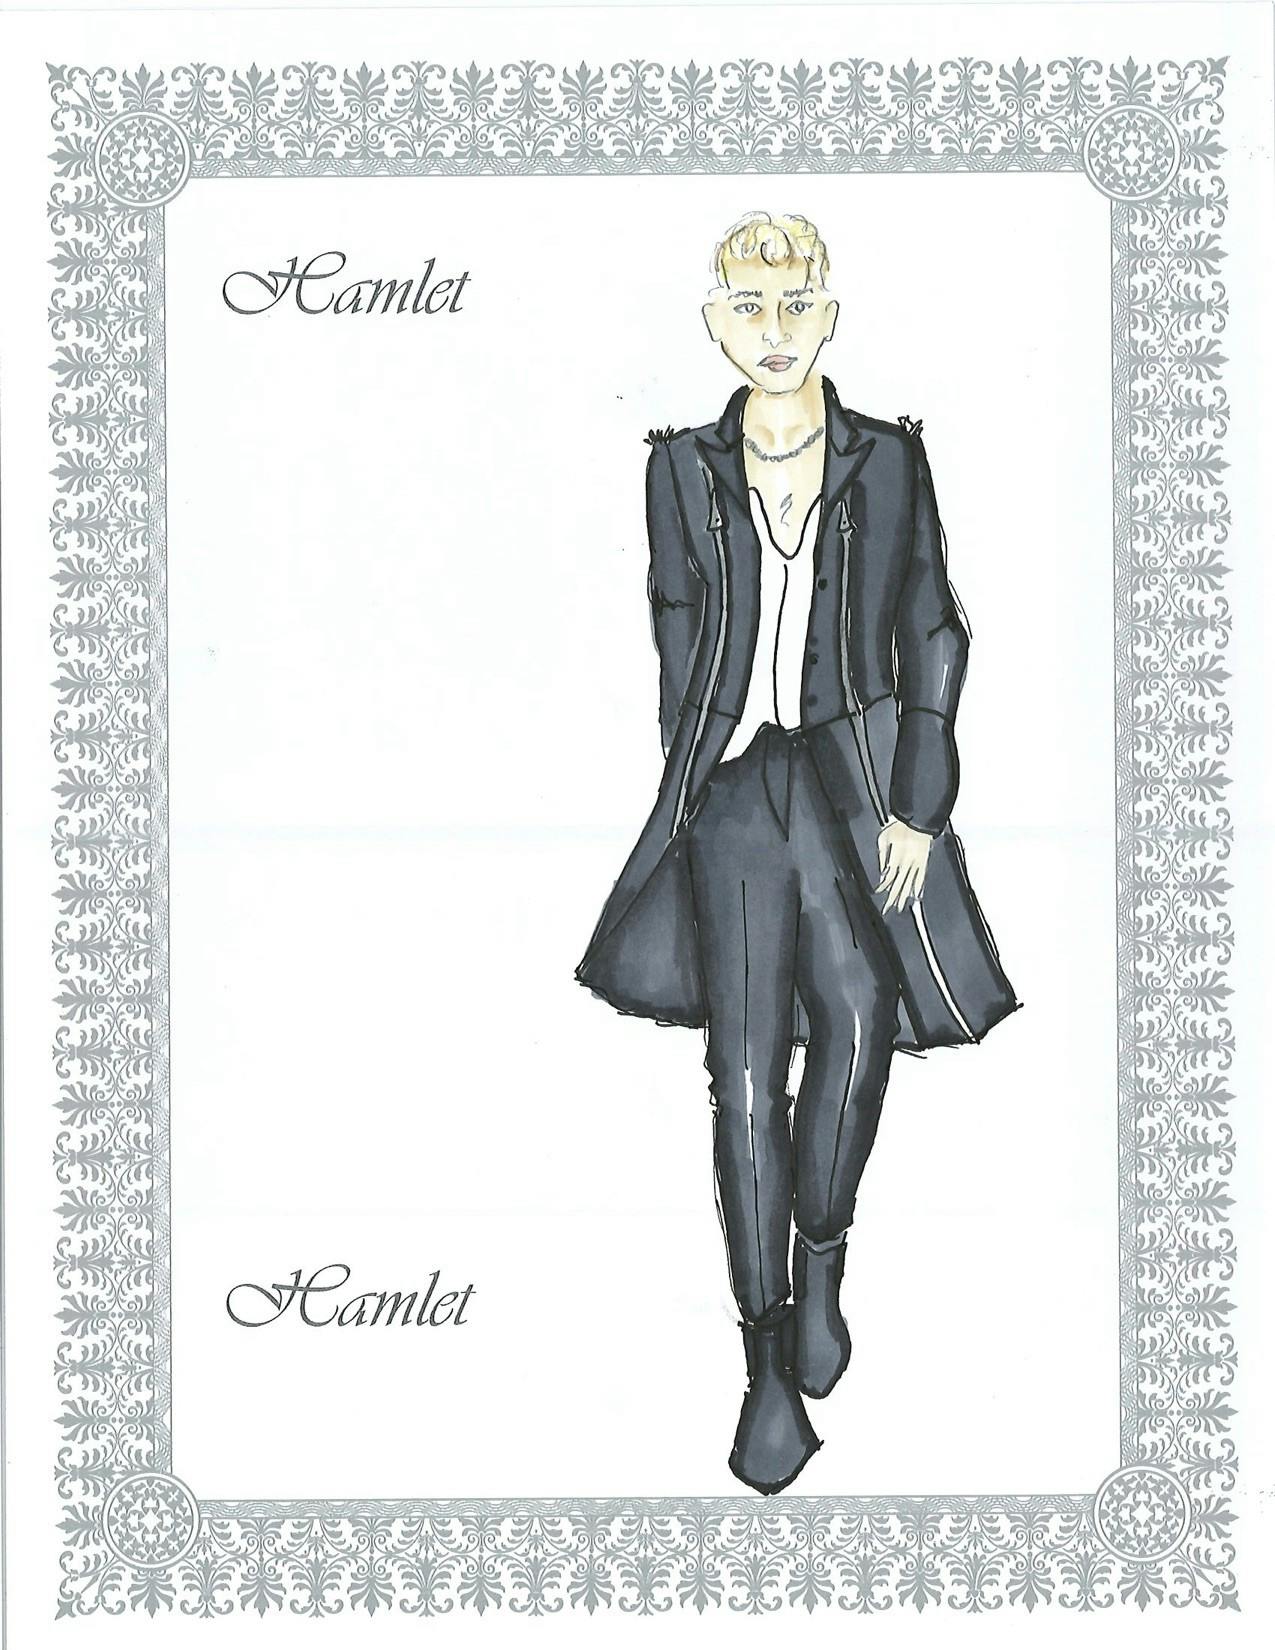 Hamlet costume design